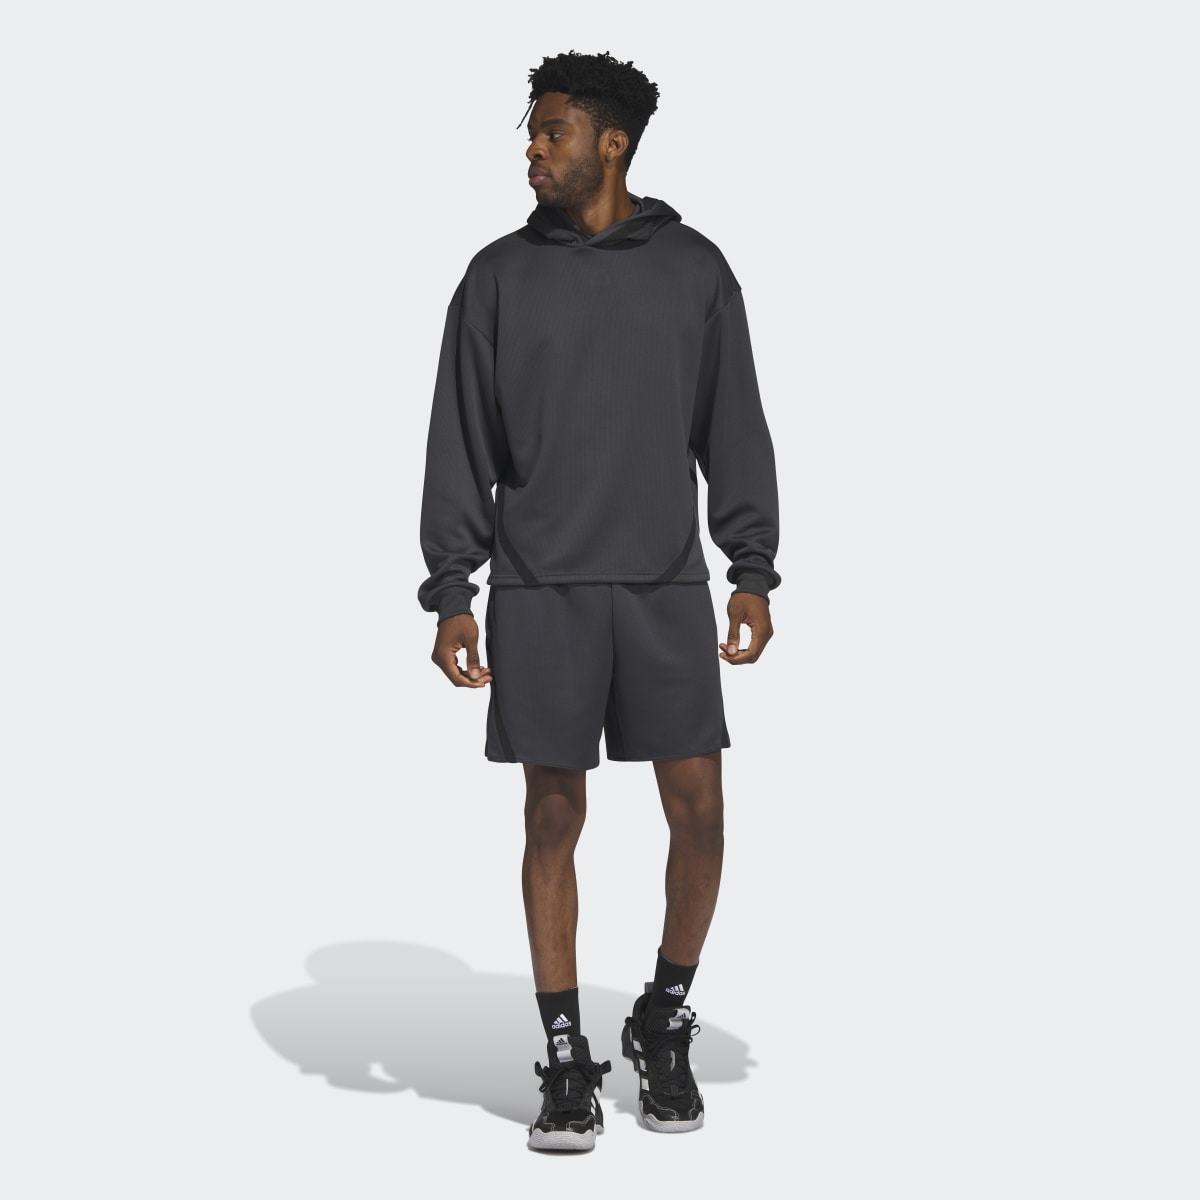 Adidas Select Shorts. 5